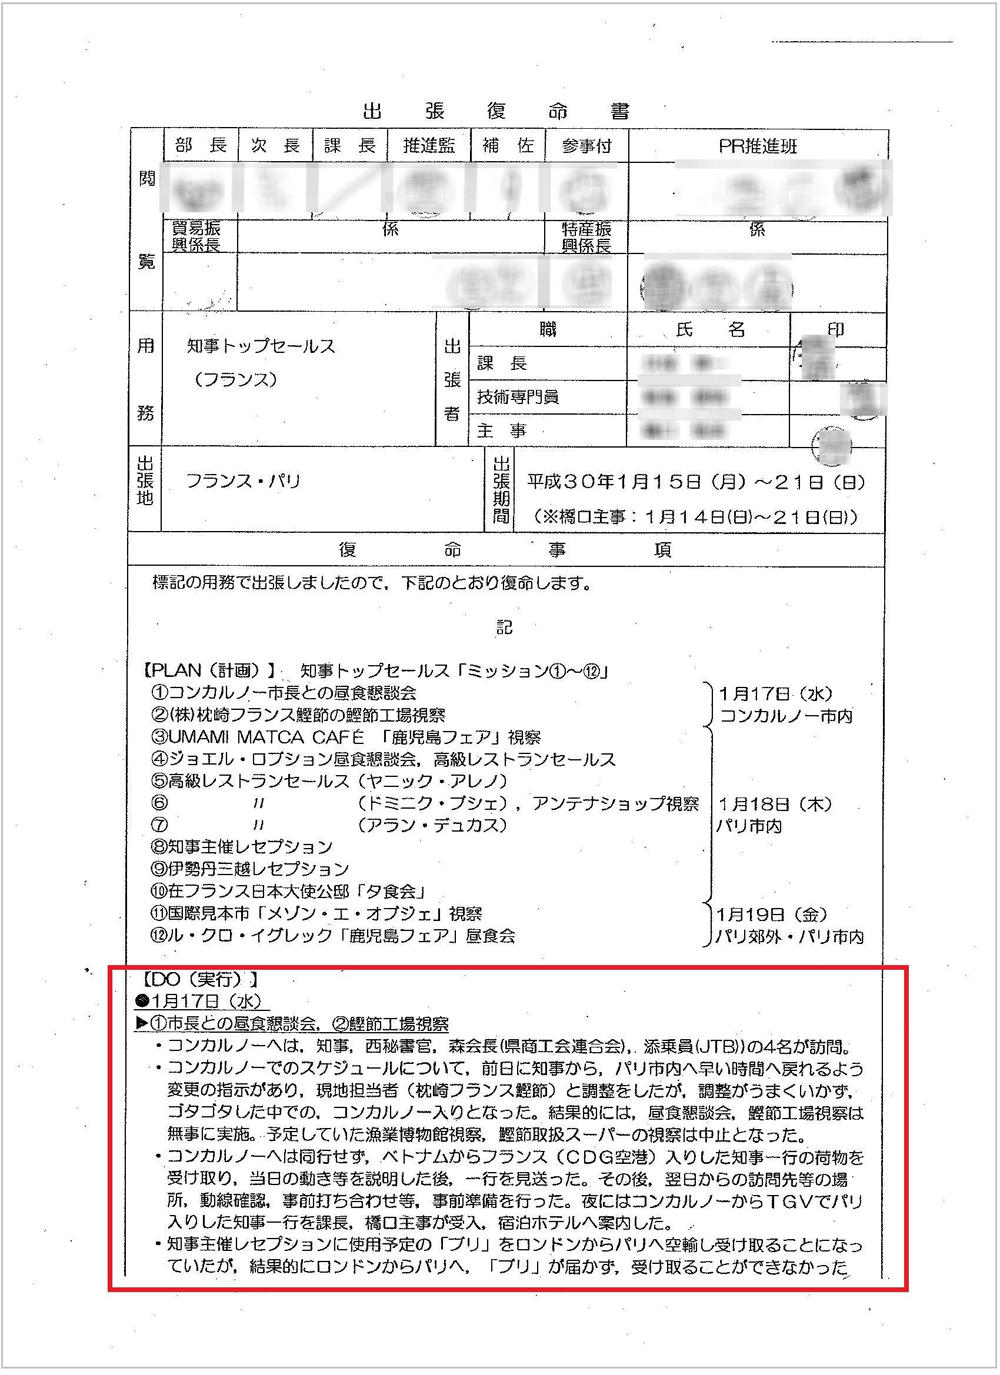 http://hunter-investigate.jp/news/2018/10/10/20181010_h01-02.jpg